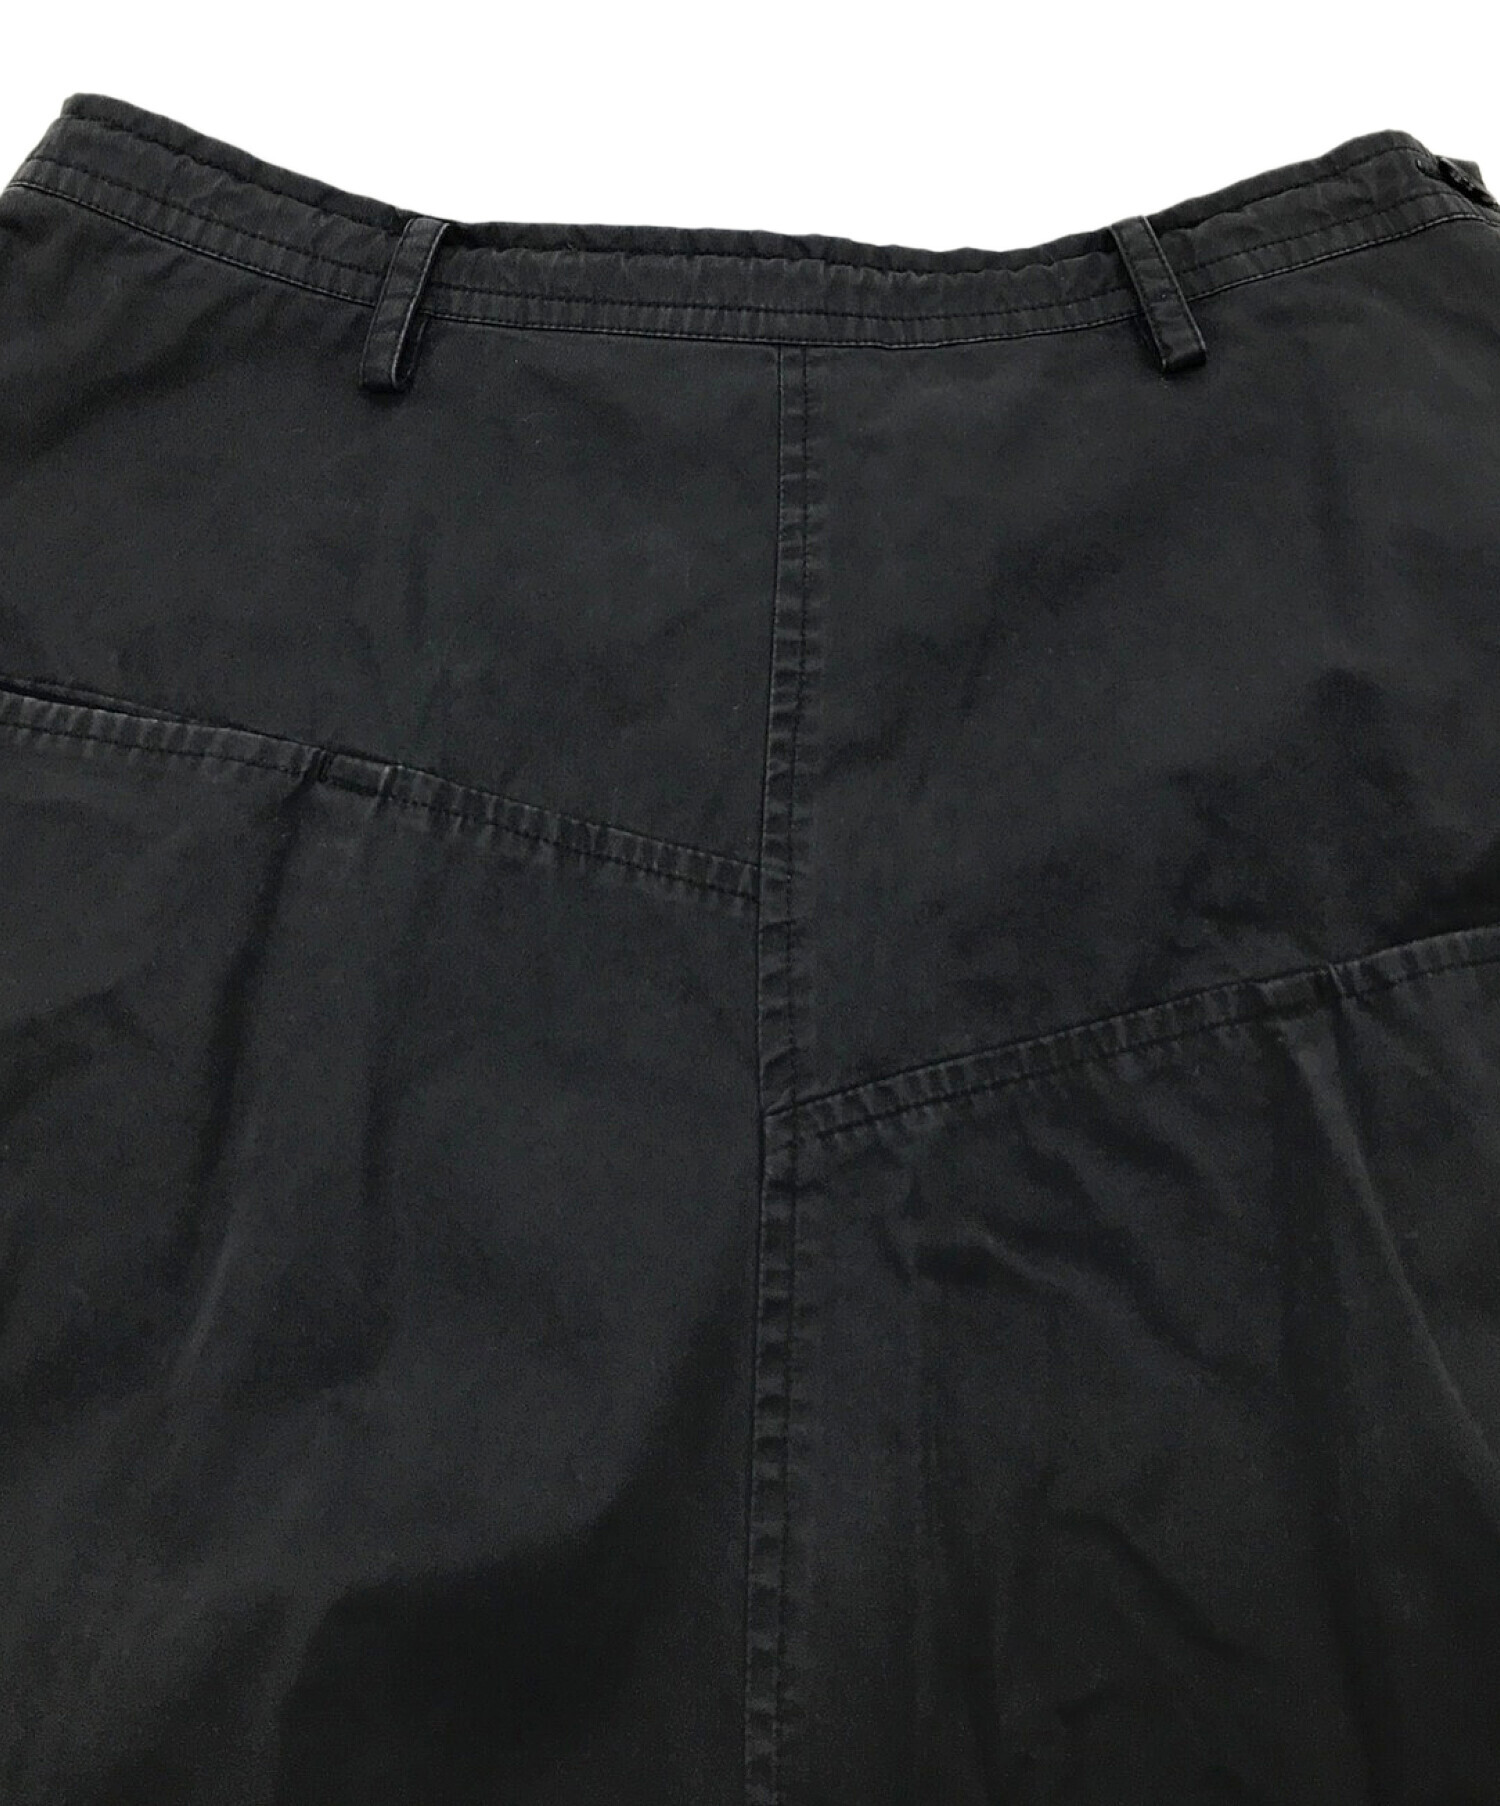 Y's (ワイズ) フレアスカート　ロングスカート ブラック サイズ:1